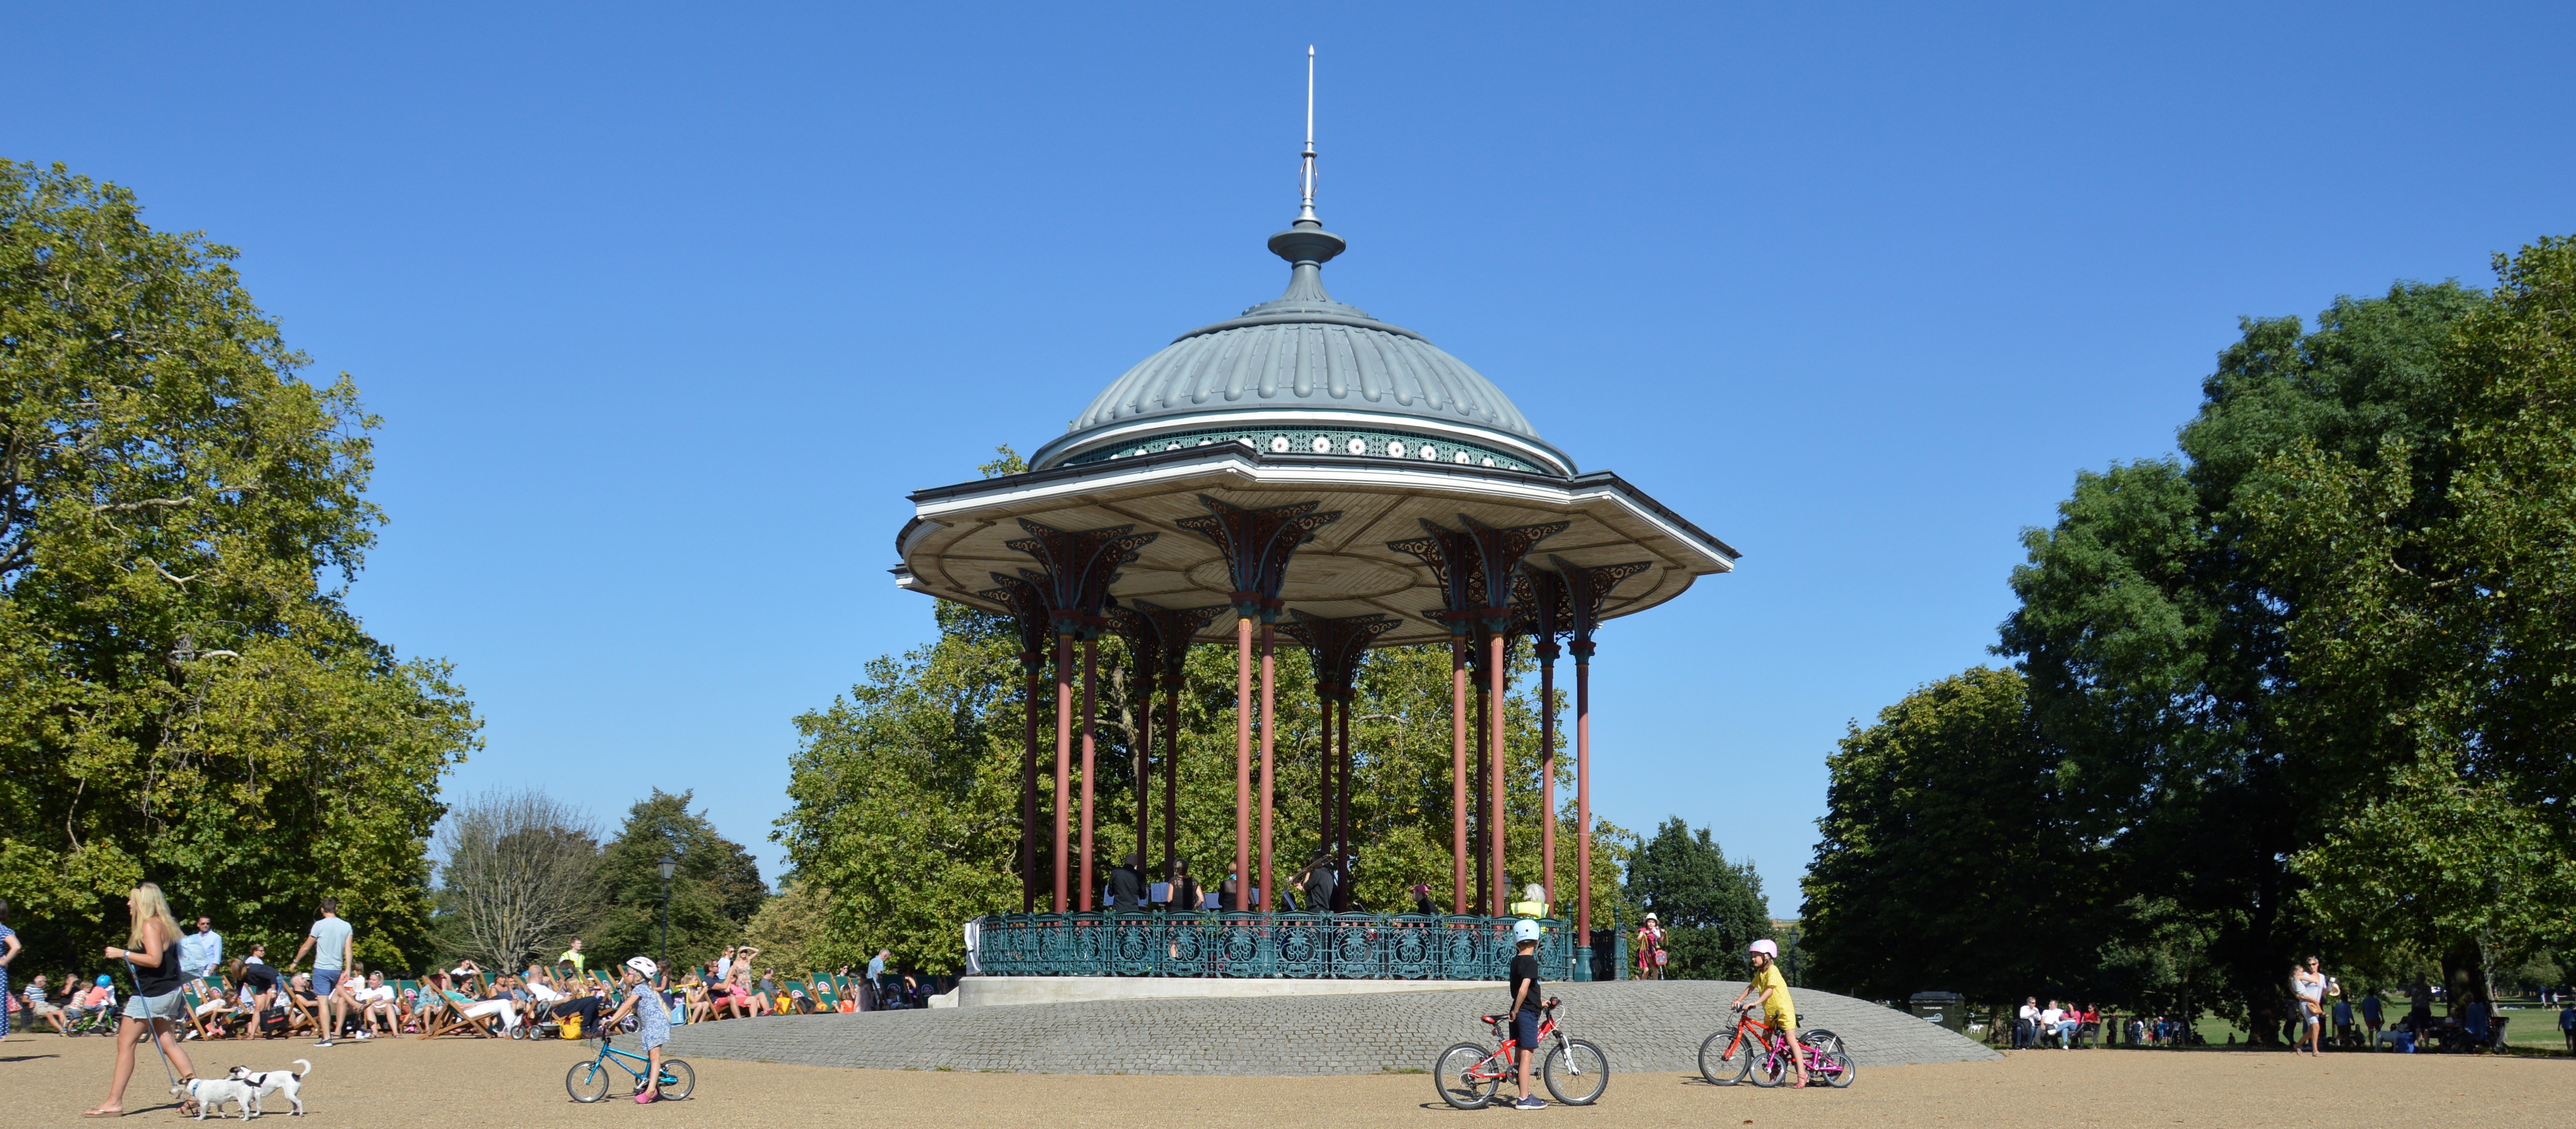 Clapham bandstand